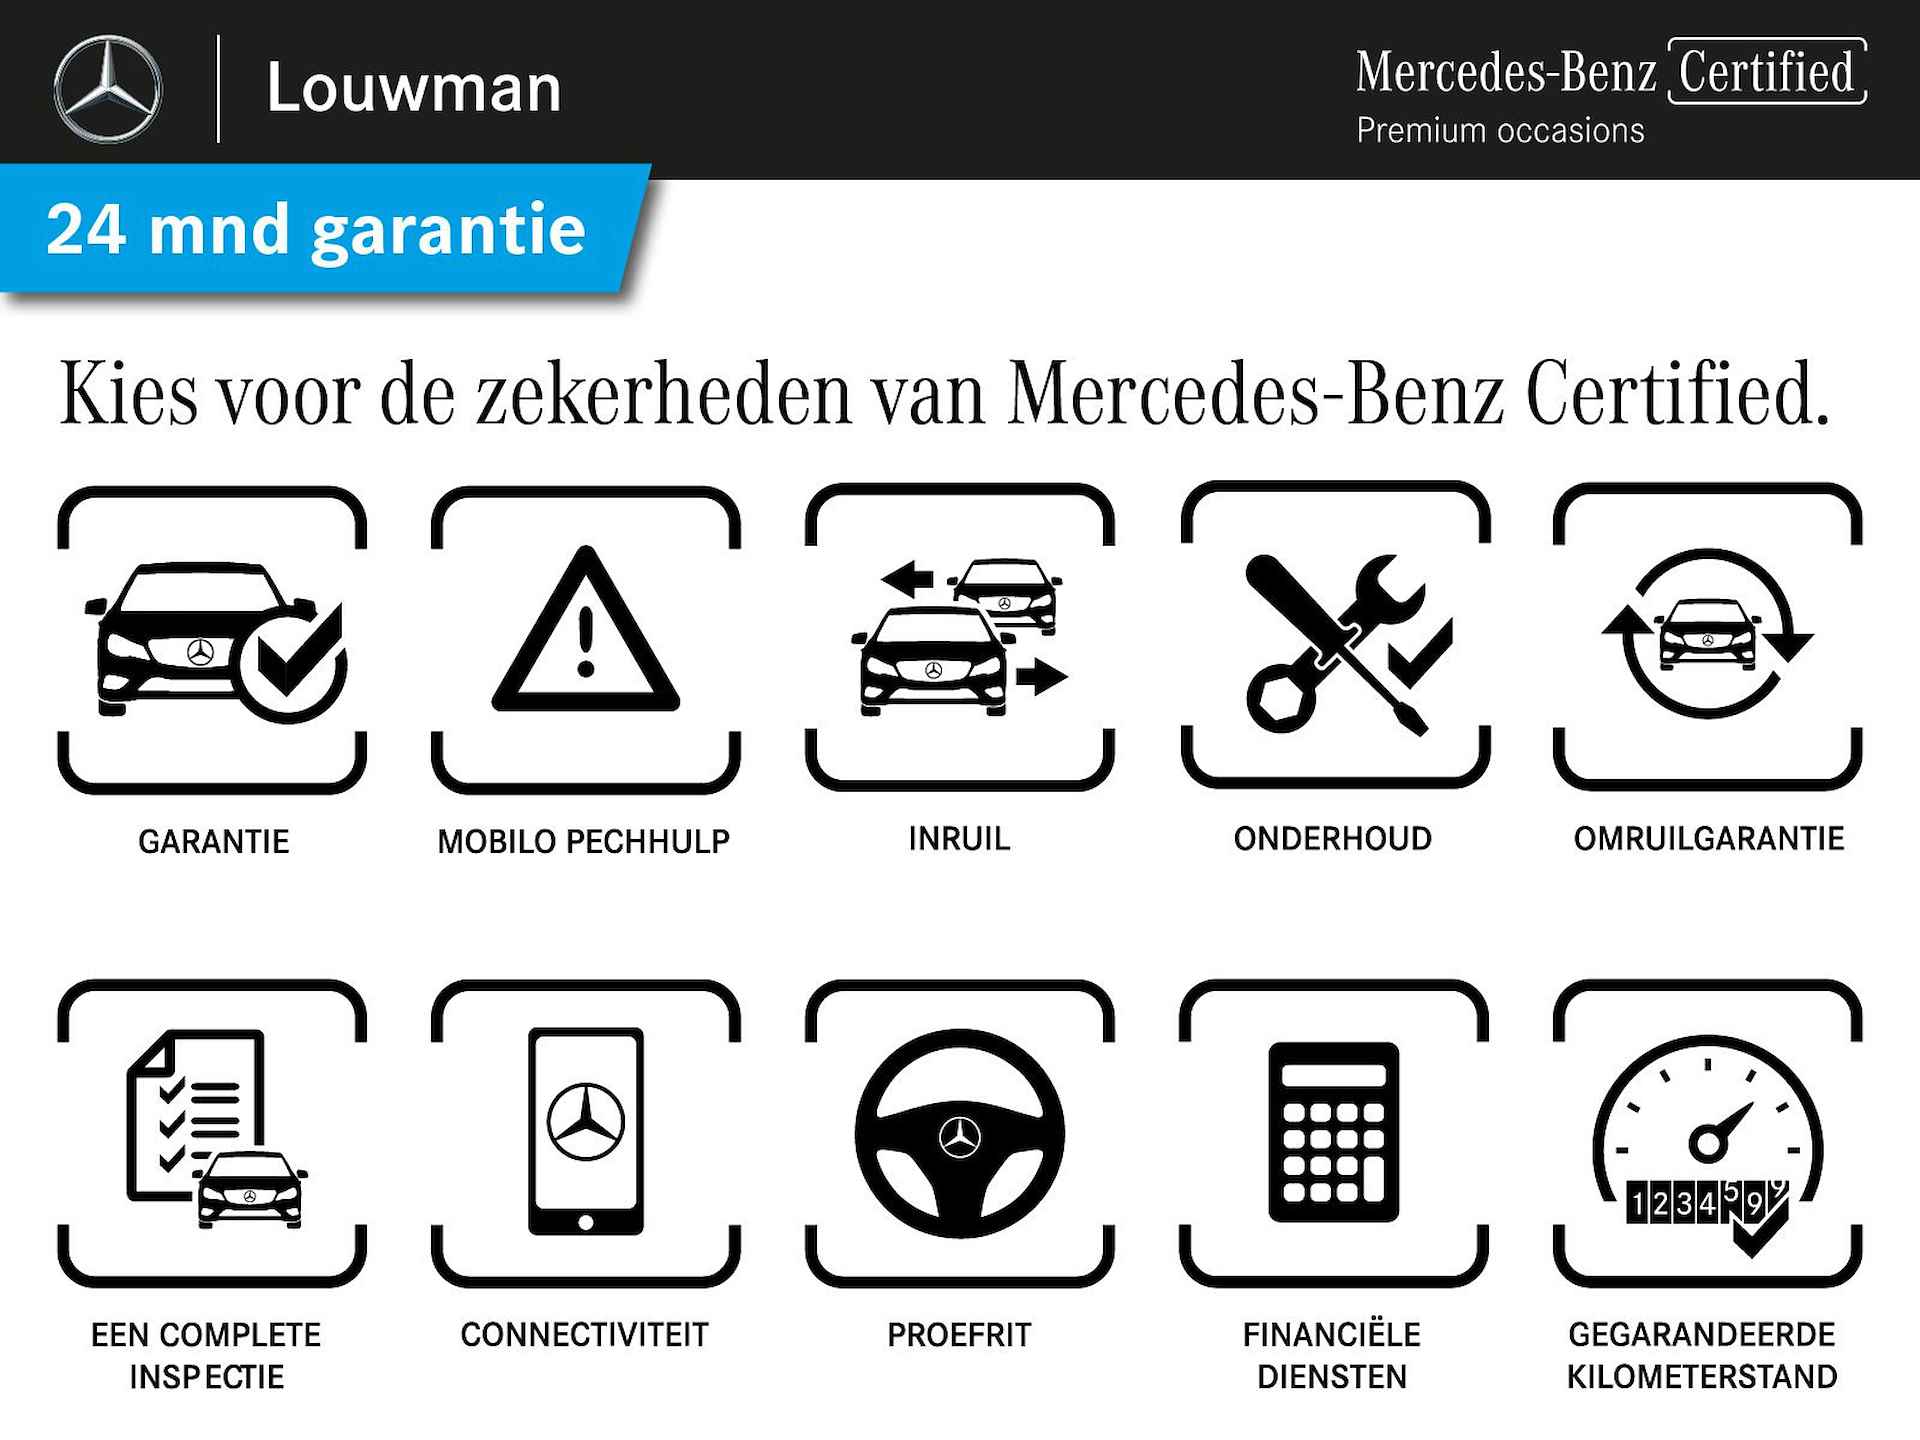 Mercedes-Benz B-Klasse 180 Luxury Line | Rijassistentiepakket | Panoramaschuifdak | Sfeerverlichting | Apple CarPlay | Android Auto | Inclusief 24 maanden Mercedes-Benz Certified garantie voor Europa. - 38/38